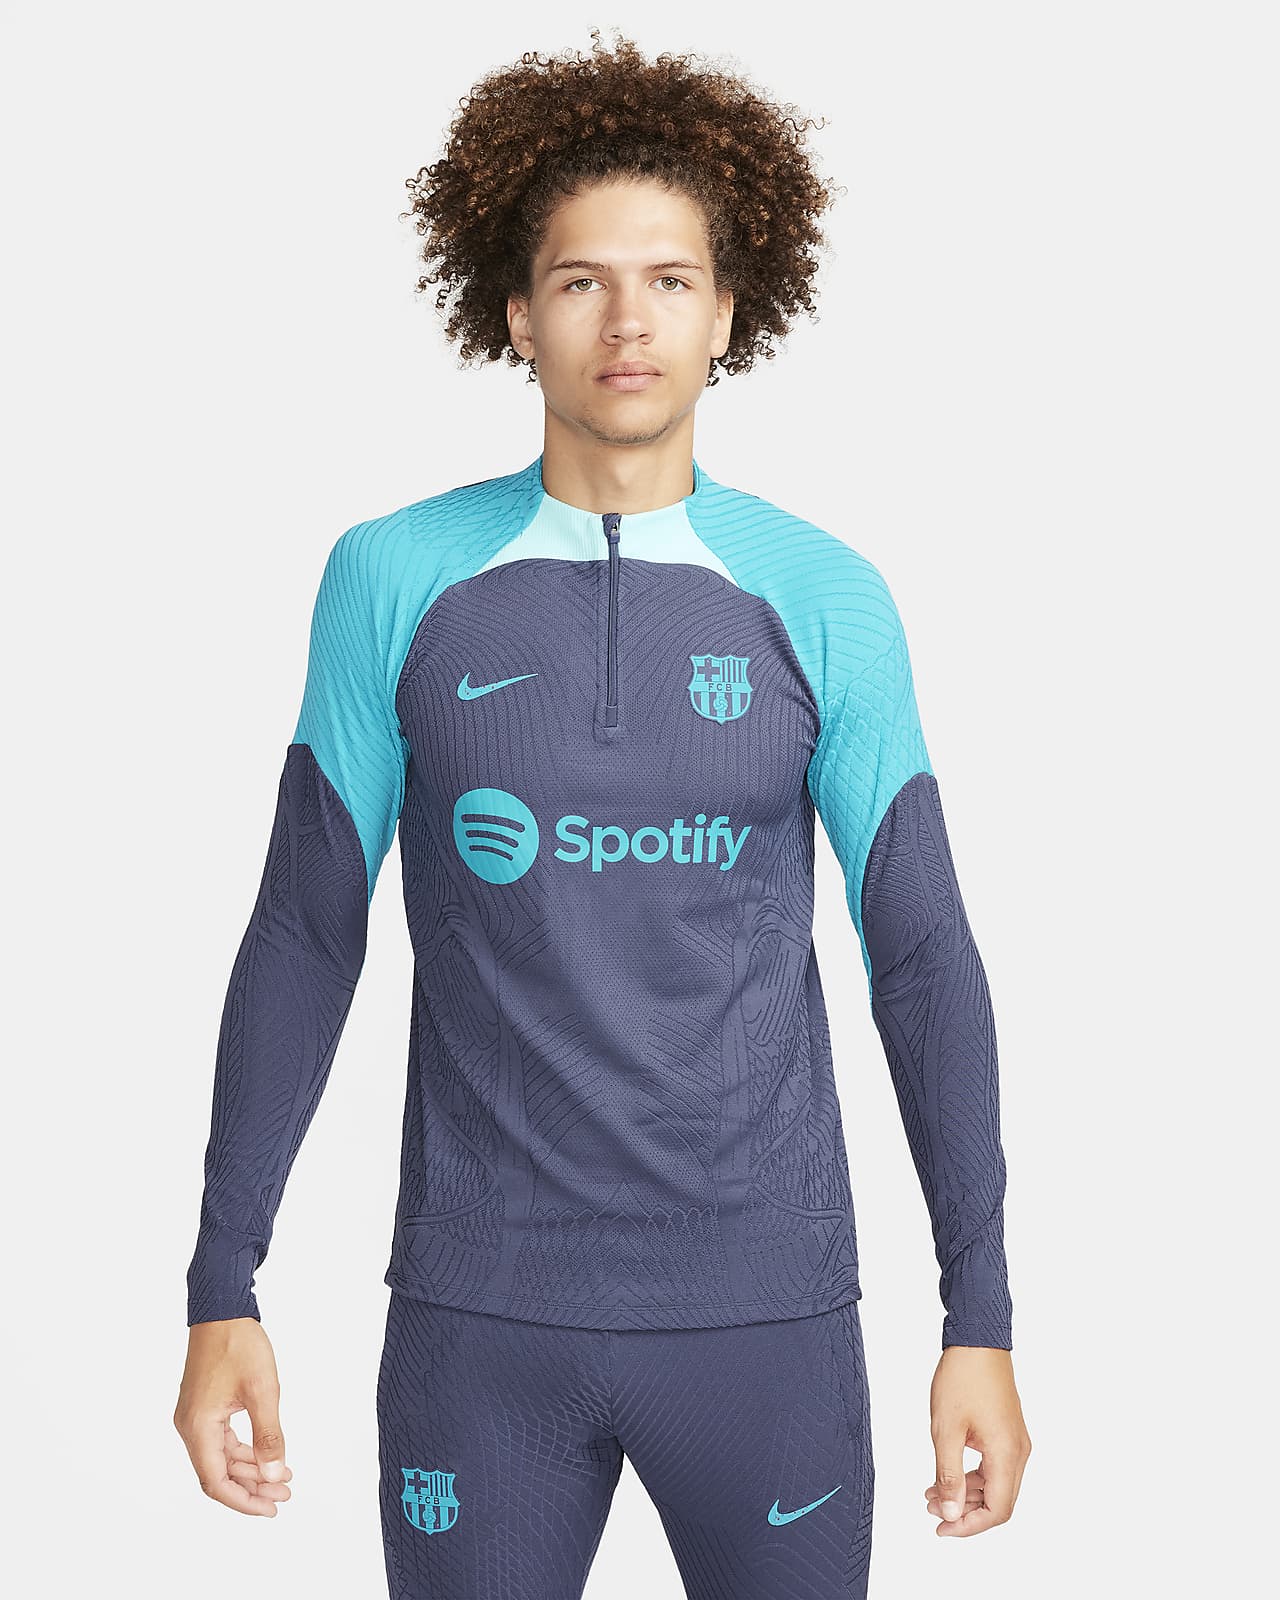 Ανδρική ποδοσφαιρική μπλούζα προπόνησης Nike Dri-FIT ADV εναλλακτικής εμφάνισης Μπαρτσελόνα Strike Elite